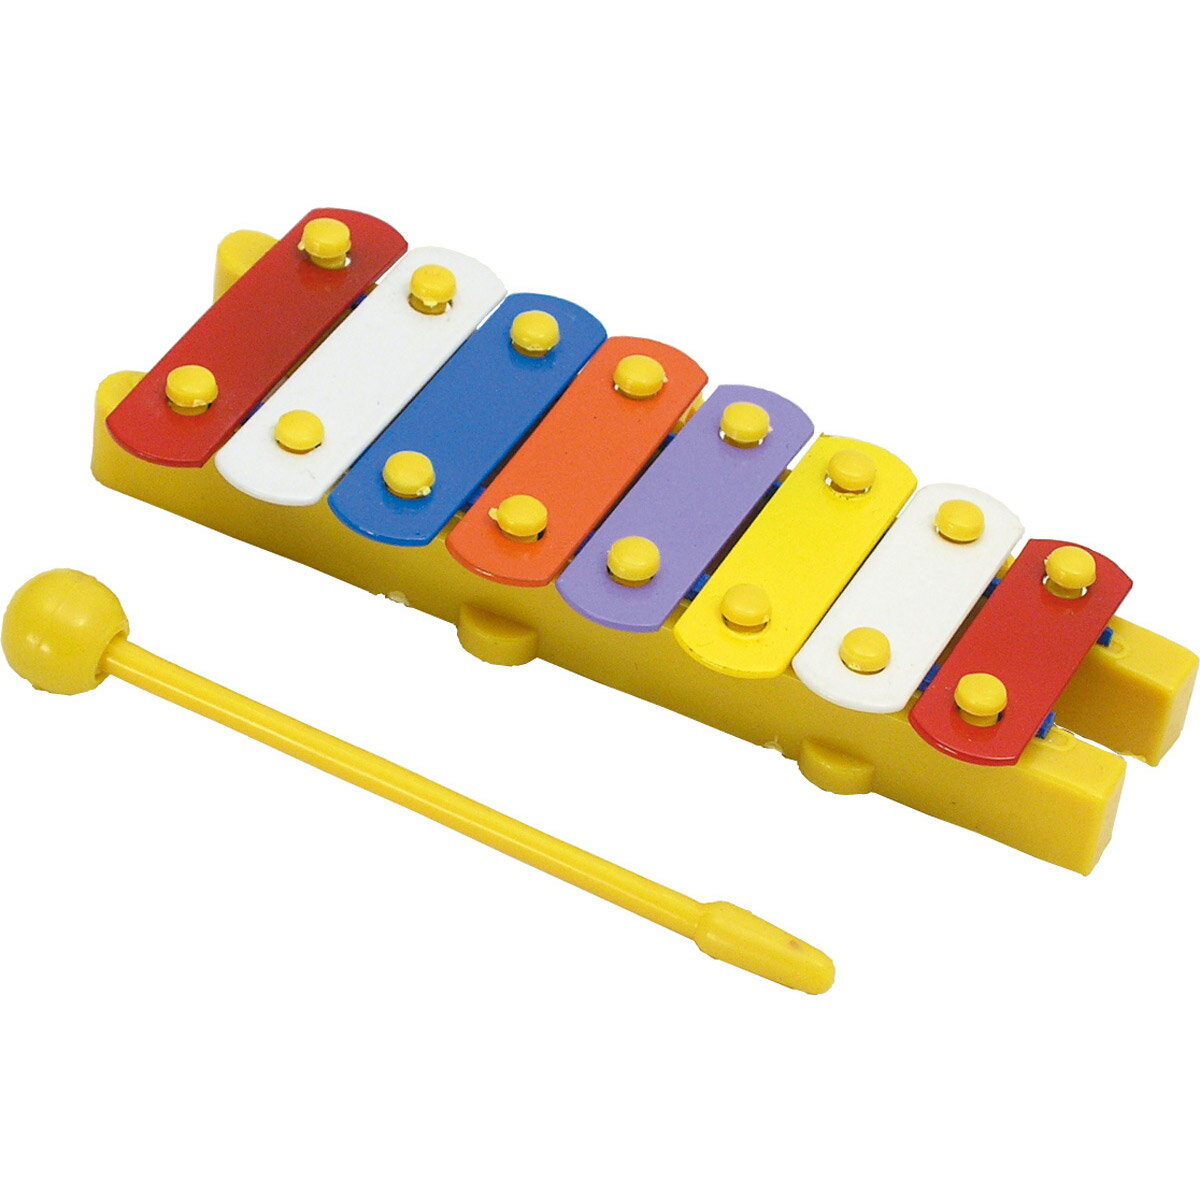 メロディギター 赤ちゃん 音 の 出る おもちゃ 楽器 知育玩具 子供 幼児 キッズ 幼稚園 保育園 歌流れる 男の子 女の子 ベビー 童謡 遊び 室内商品番号:ATC-08062楽しいメロディーが流れる!色取り混ぜ（※商品の色は選べません）。短音(音階)が流れるモードと曲が流れるモードの2種類があります（各ボタンに音楽が設定されています）。サイズ:95×170×25mmドラム 3INドラム 知育玩具 おもちゃ 子供用 子供 キッズ おもちゃ 学習教材 パズル★色取り混ぜ 室内商品番号:ATC-00675パズル、タイコ、迷路と3つの遊びが楽しめる!商品サイズ:本体/φ140×100mmスティック/φ20×105mmジグソーパズル ジャングル ゲーム 幼児 迷路 めいろ 知育玩具 子供 キッズ おもちゃ パズル 室内商品番号:ATC-007613つのあそびがたのしめるジグソーパズルです!!カスタネット 学校用 名前記入欄付 学童用 学校 幼稚園 入園 楽器 音楽 デビカ商品番号:DBK-0373音楽の授業に。商品サイズ:直径58mm4521718078441　ls@ATC-00760ミニ てっきん 子供 キッズ おもちゃ 幼児 楽器 鉄琴 遊び 男の子 女の子 知育玩具 3歳 4歳 5歳 室内007844商品サイズ:130×54mm/※バチ1本付小さくて可愛い本格的な鉄琴です。&nbsp;ミニ てっきん 子供 キッズ おもちゃ 幼児 楽器 鉄琴 遊び 男の子 女の子 知育玩具 3歳 4歳 5歳 室内スペック商品サイズ130×54mm材質PP、鉄対象年齢3歳以上 アーテック ※仕様及び外観は改善のため、予告なく変更することがあります。●クリスマス【●こども館】